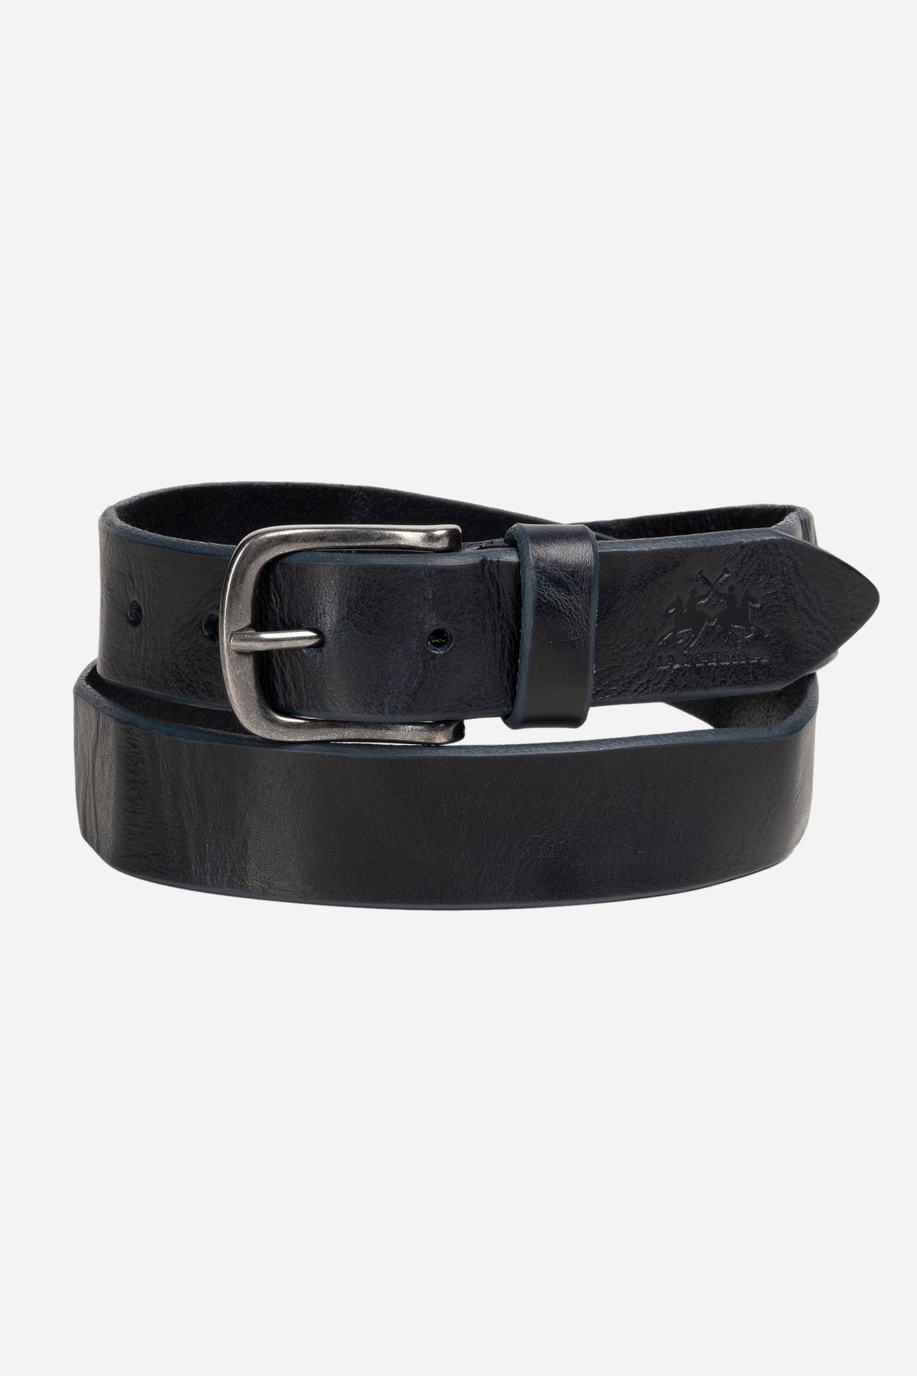 Blue leather belt - Accessories | La Martina - Official Online Shop